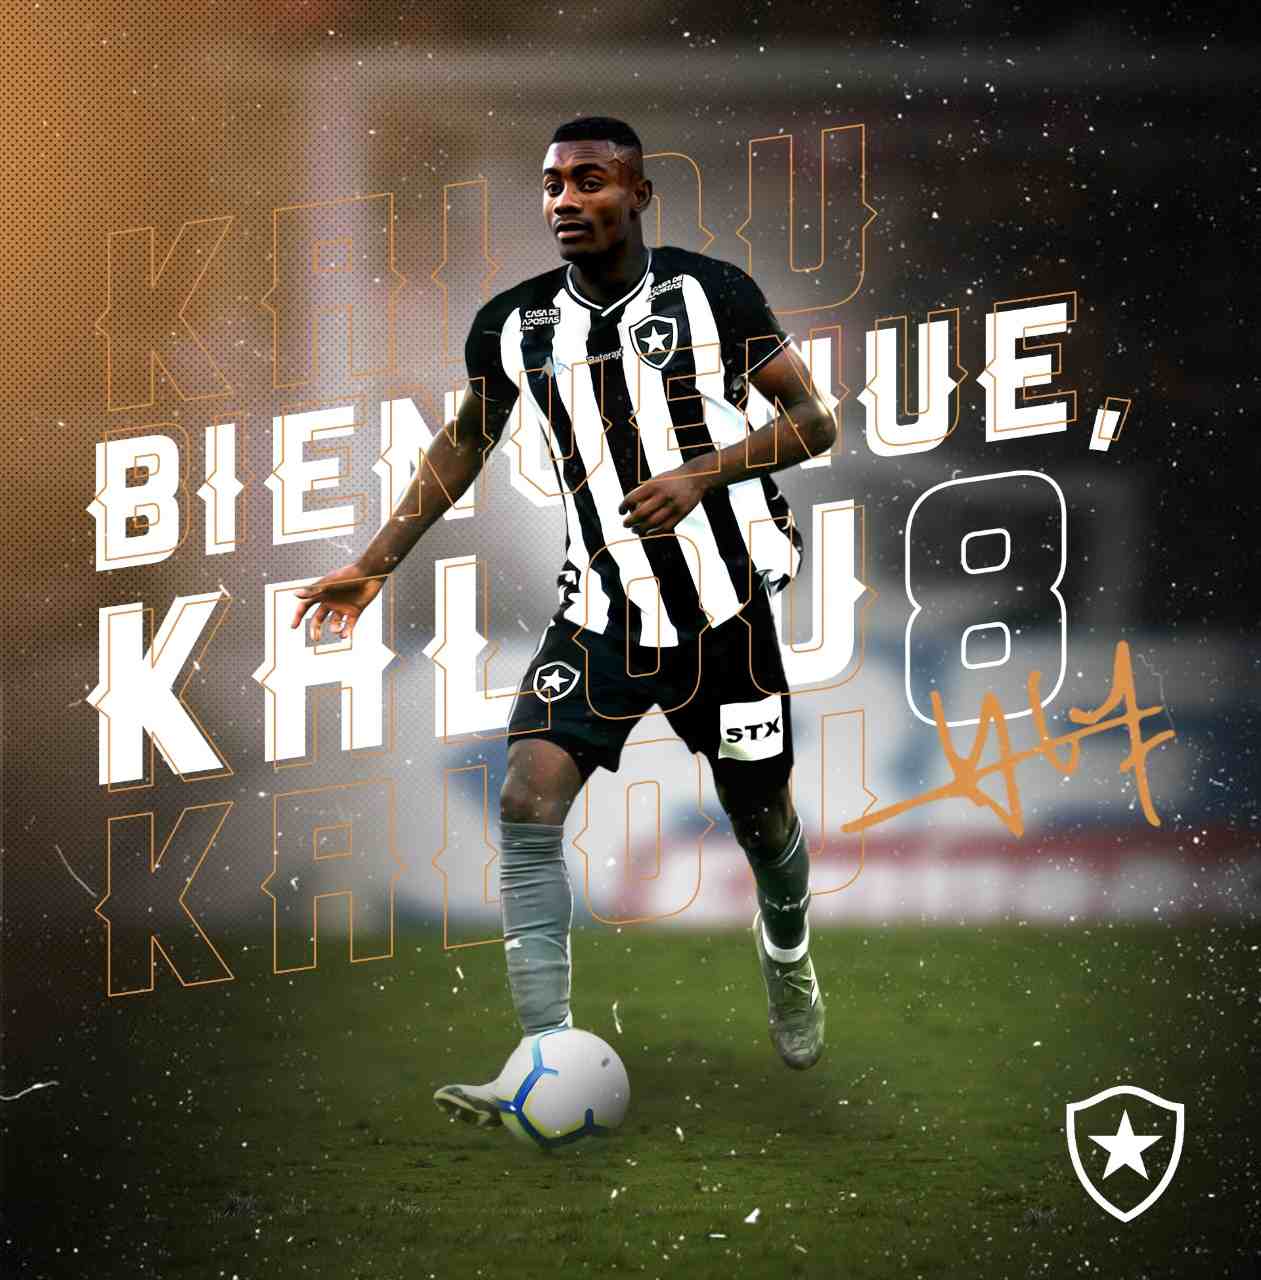 FECHADO - O segundo reforço de renome internacional do Botafogo para a temporada está liberado para entrar em campo. O nome de Salomon Kalou apareceu no BID (Boletim Informativo Diário) da CBF nesta quinta-feira e ele, consequentemente, pode estrear pelo Alvinegro.